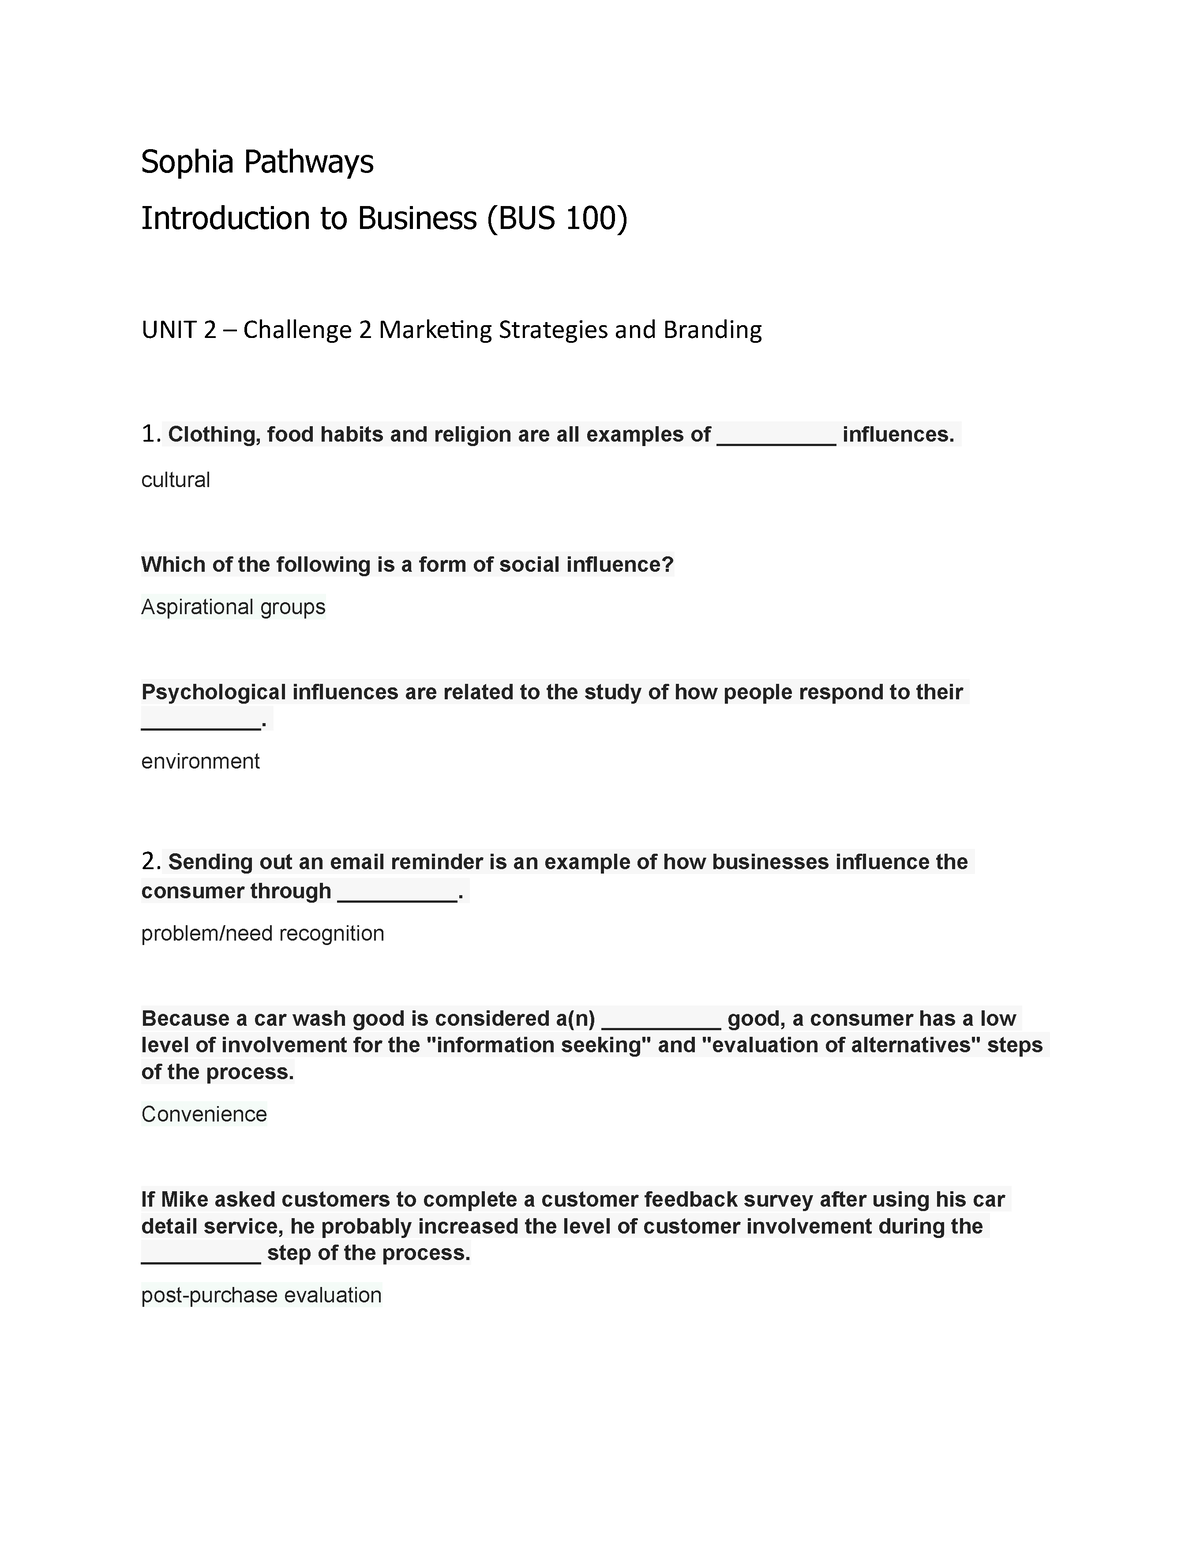 BUS 100 Unit 2 Challenge 2 - Sophia Pathways Introduction to Business (BUS  100) UNIT 2 – Challenge 2 - Studocu